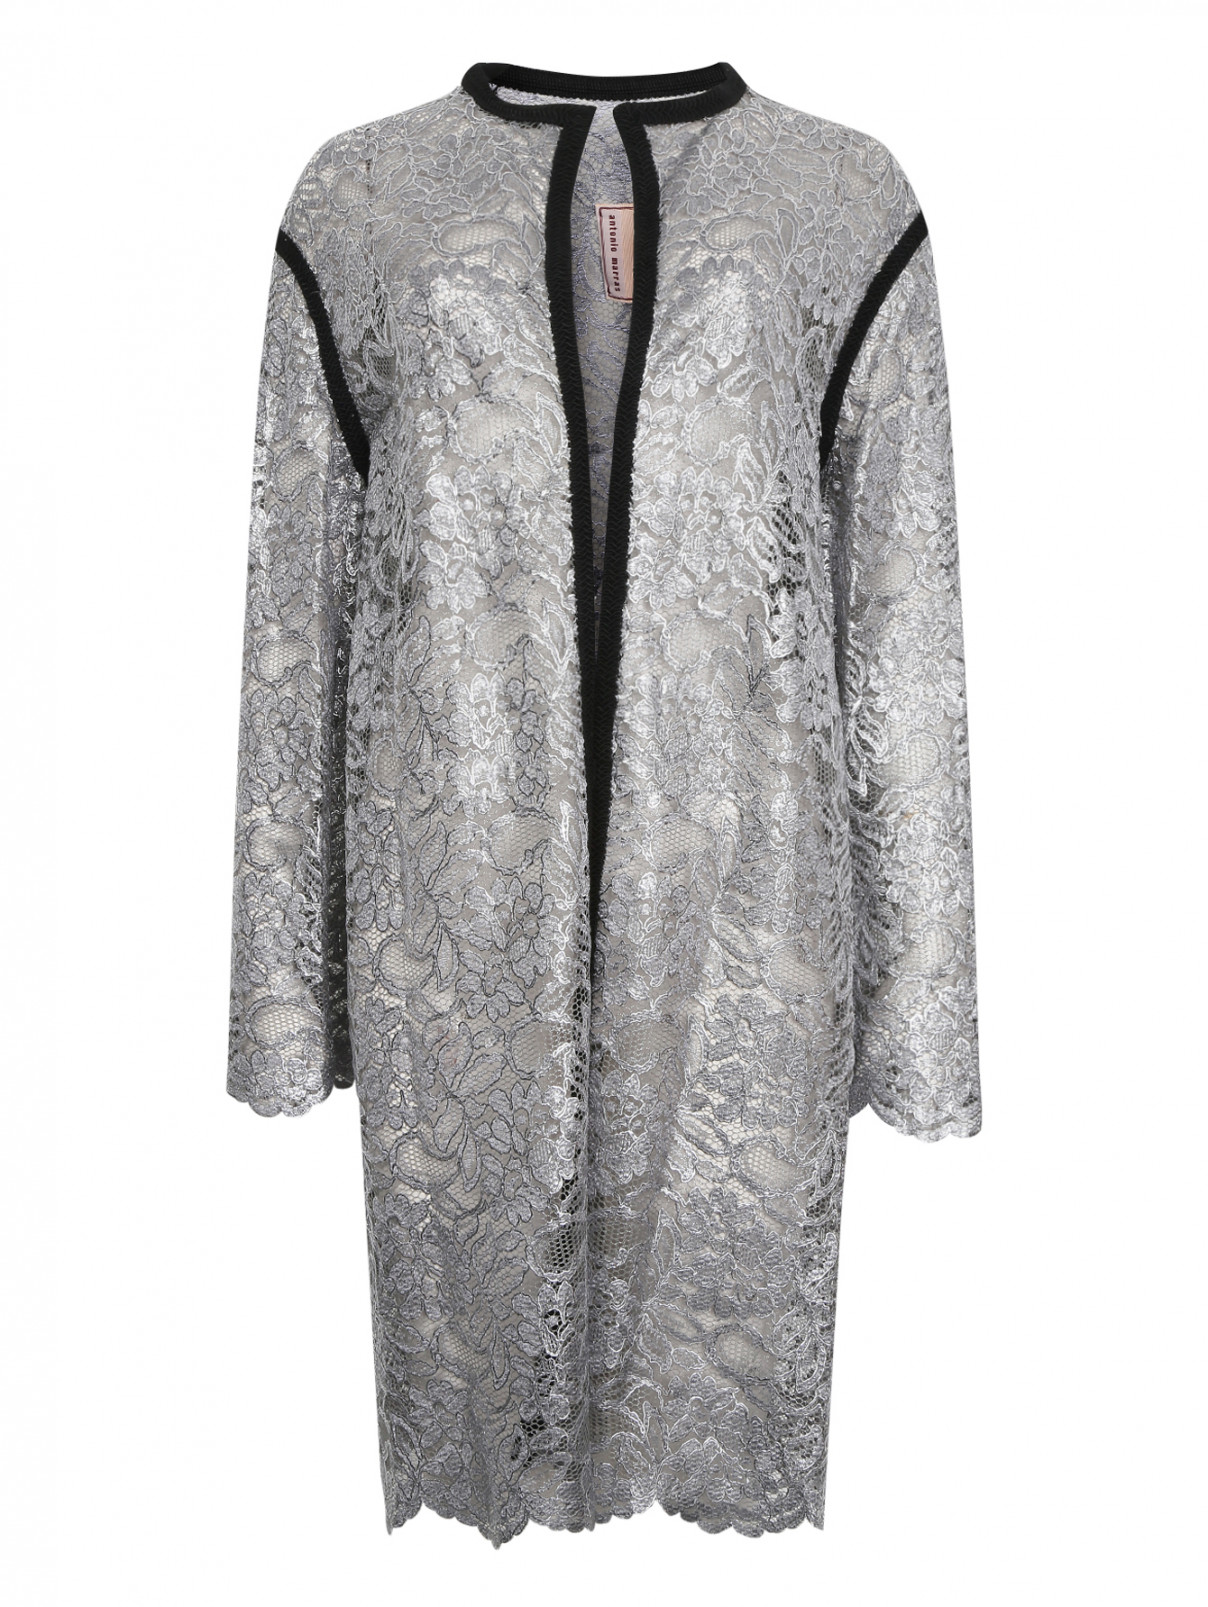 Пальто из гипюра Antonio Marras  –  Общий вид  – Цвет:  Серый